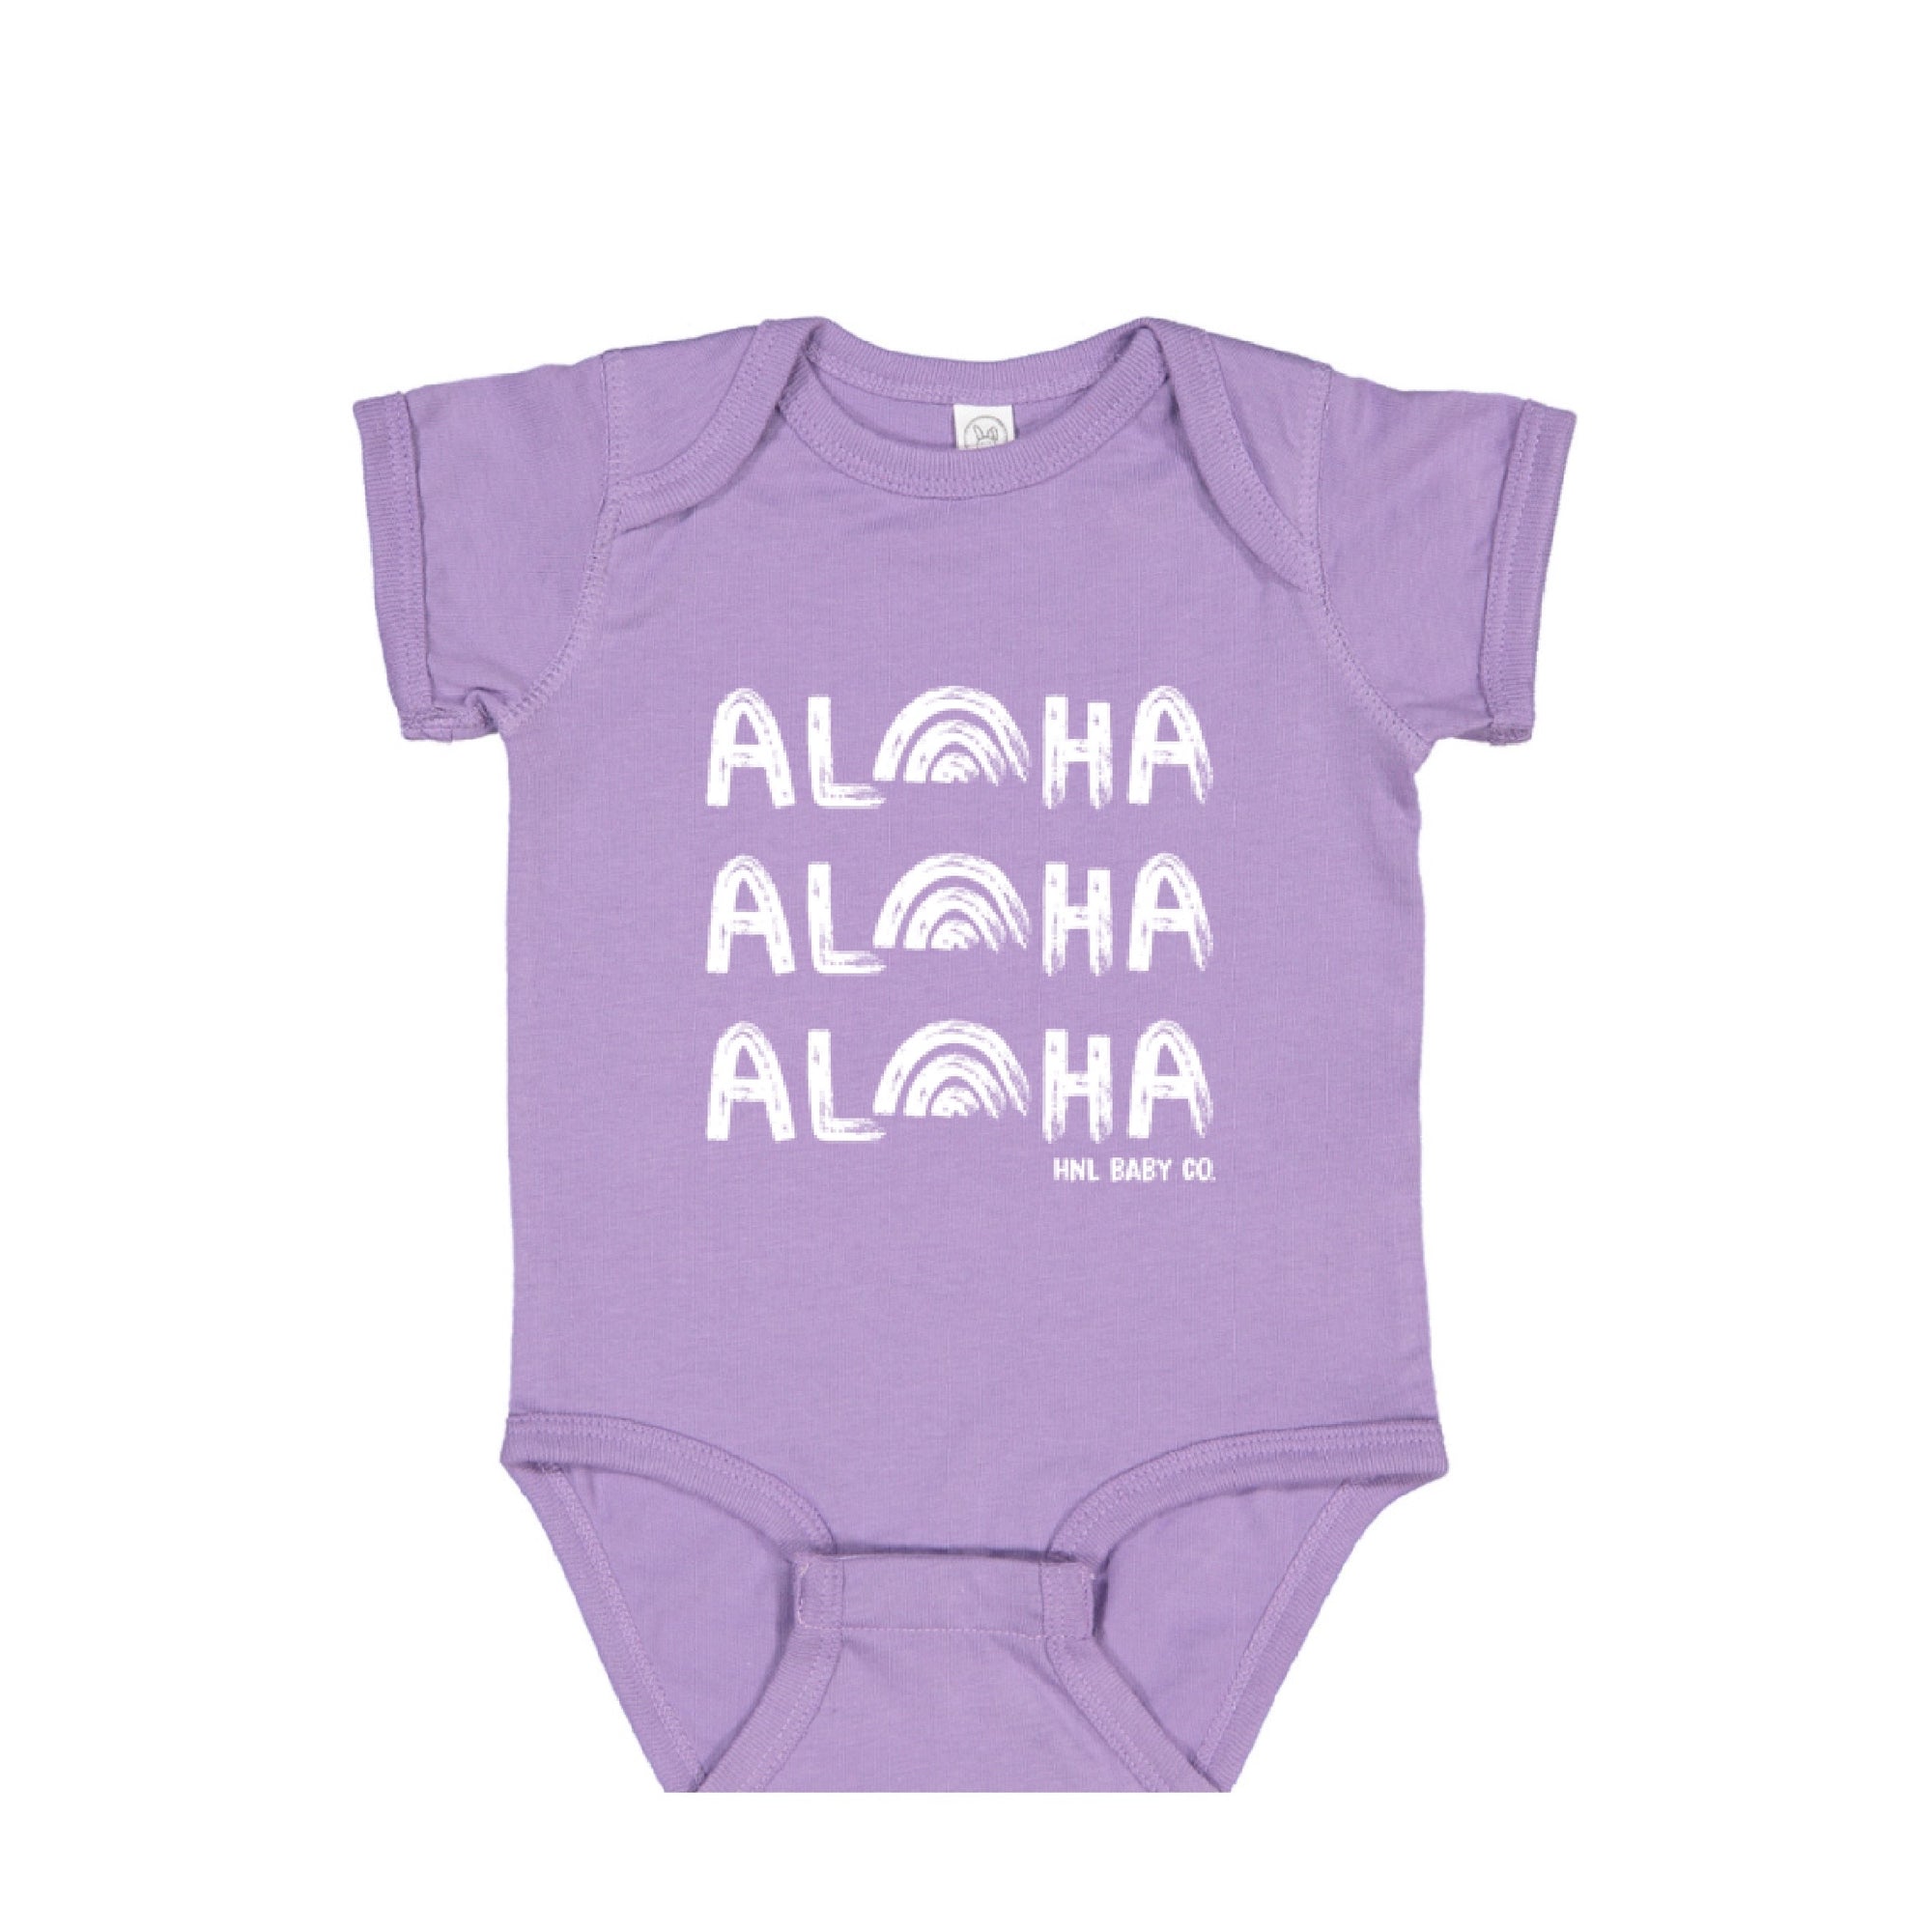 "Aloha, Aloha, Aloha" Baby Onesie - Lavender